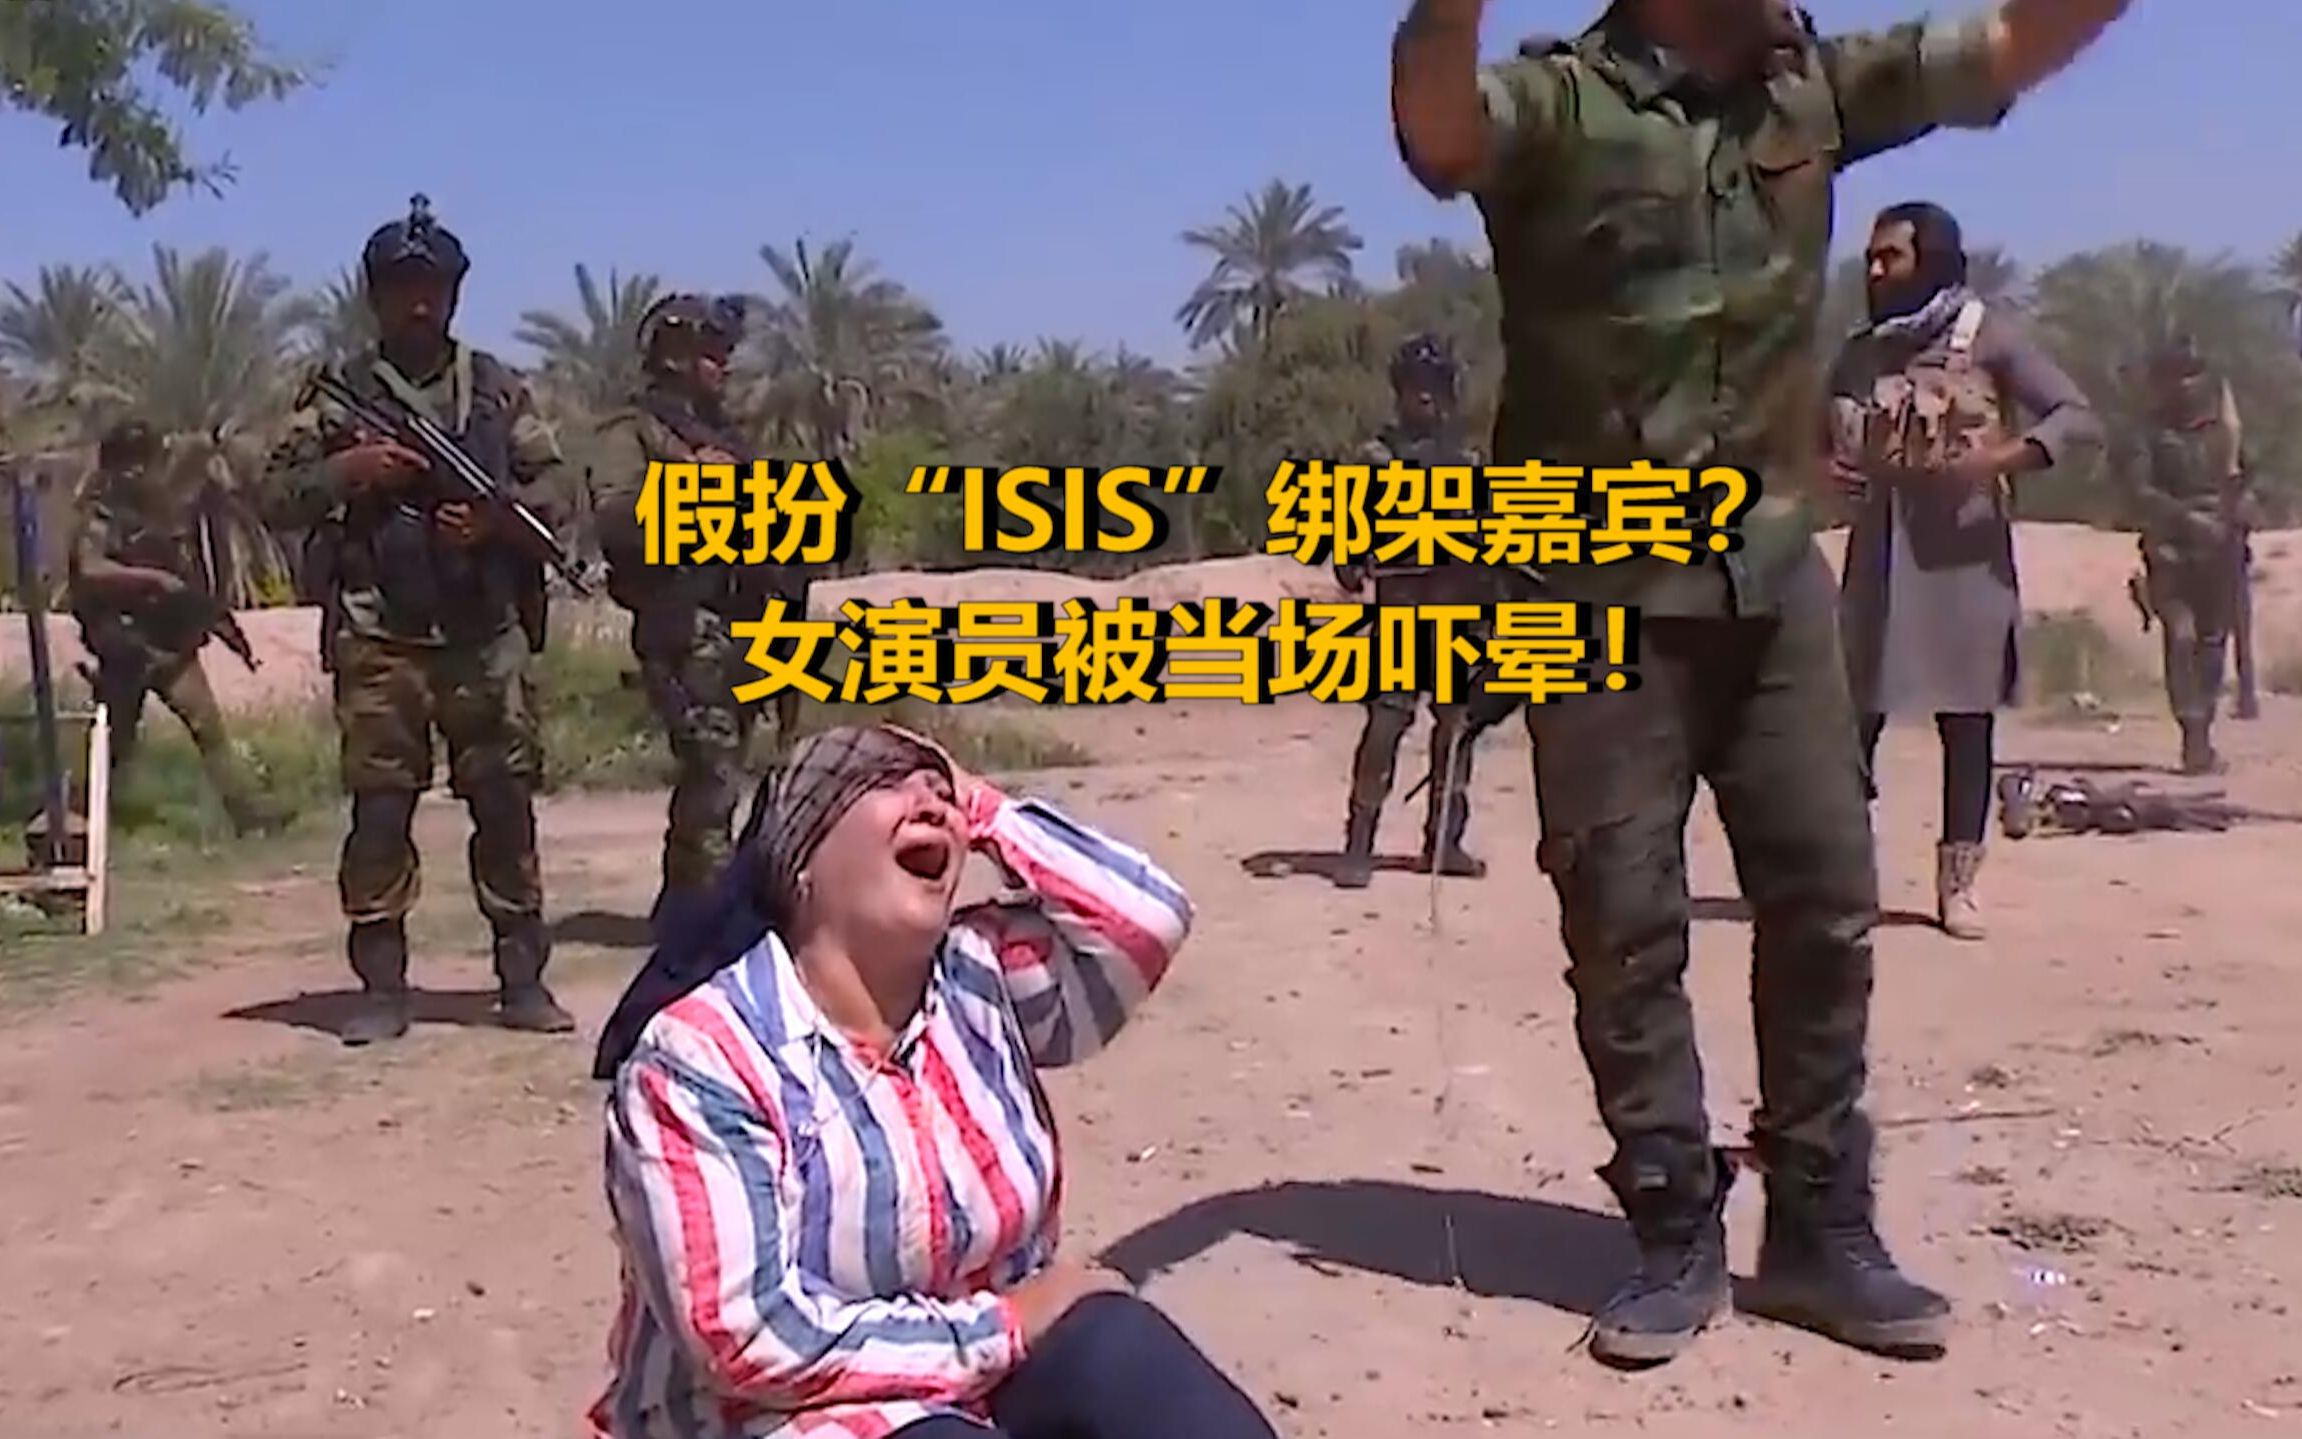 伊拉克节目组假扮“ISIS”绑架嘉宾 女演员被自杀背心当场吓晕